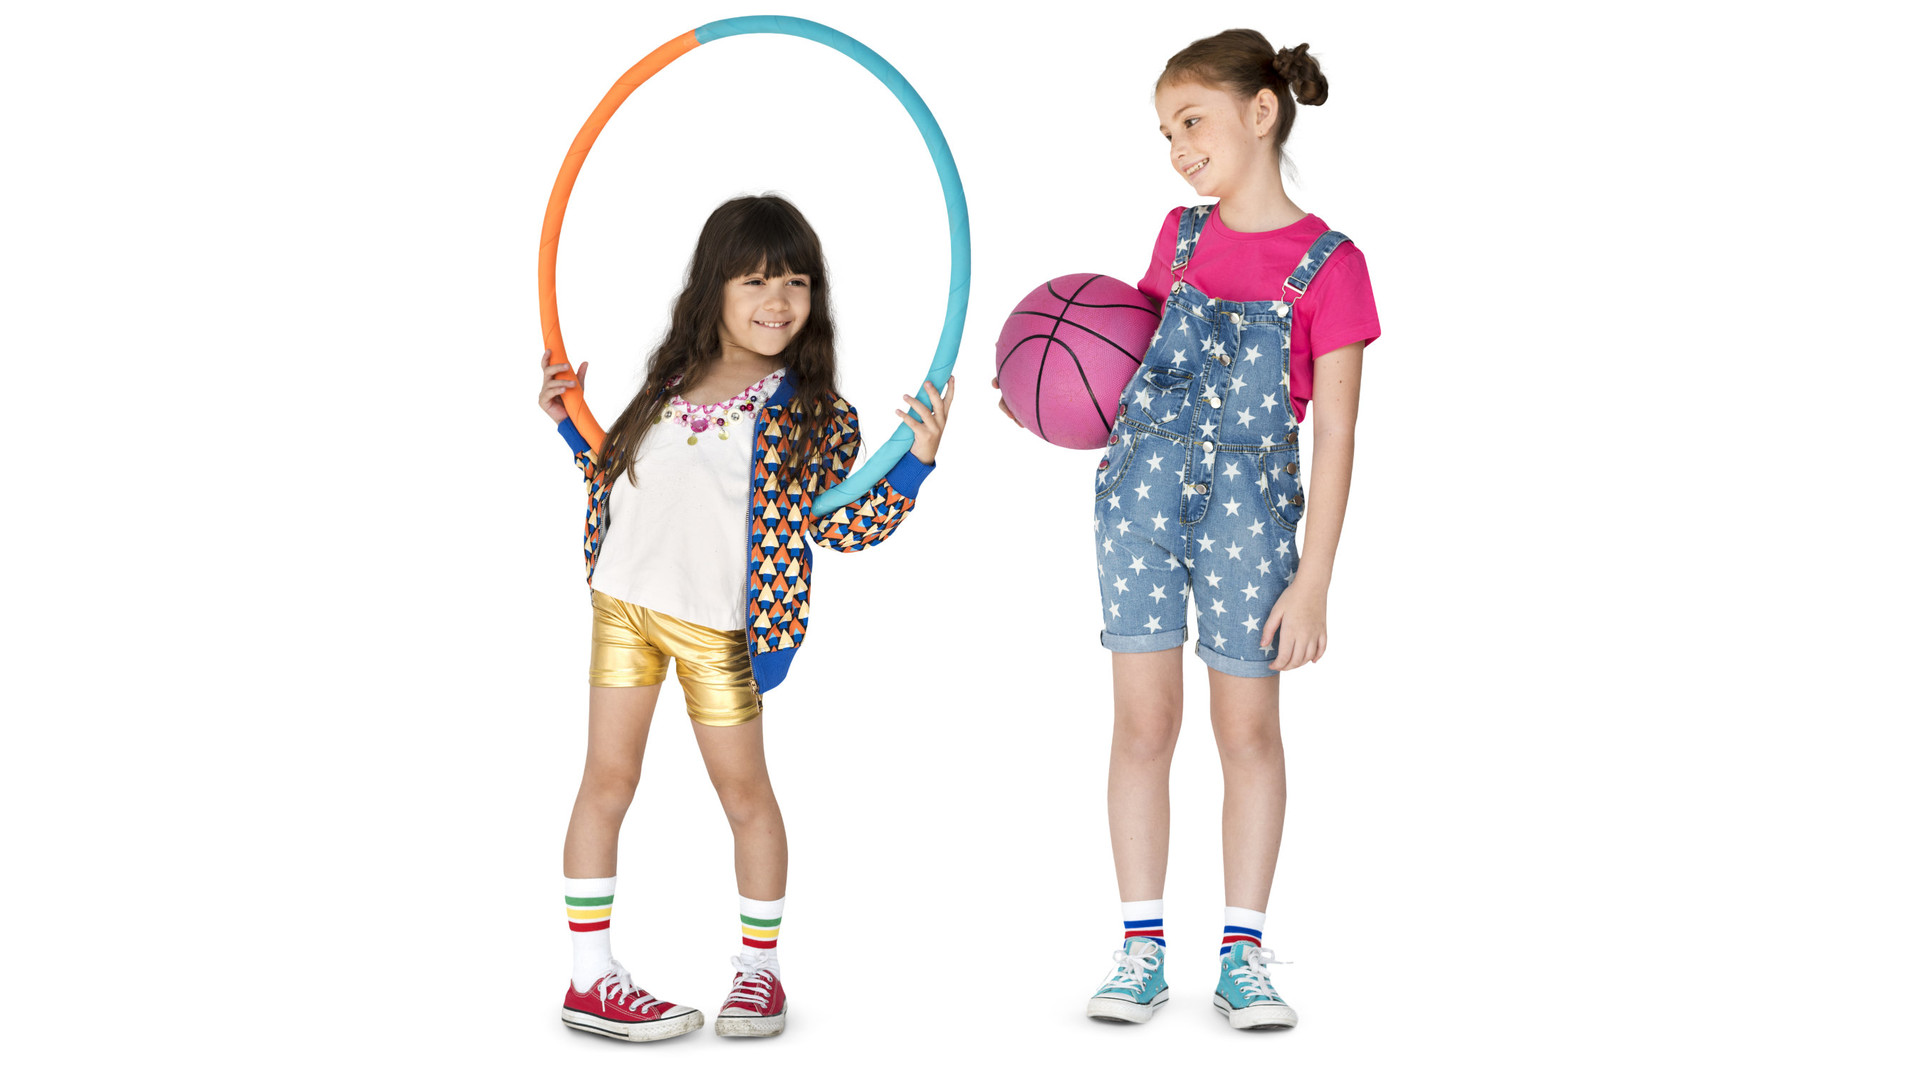 Hula hoop and basketball girls